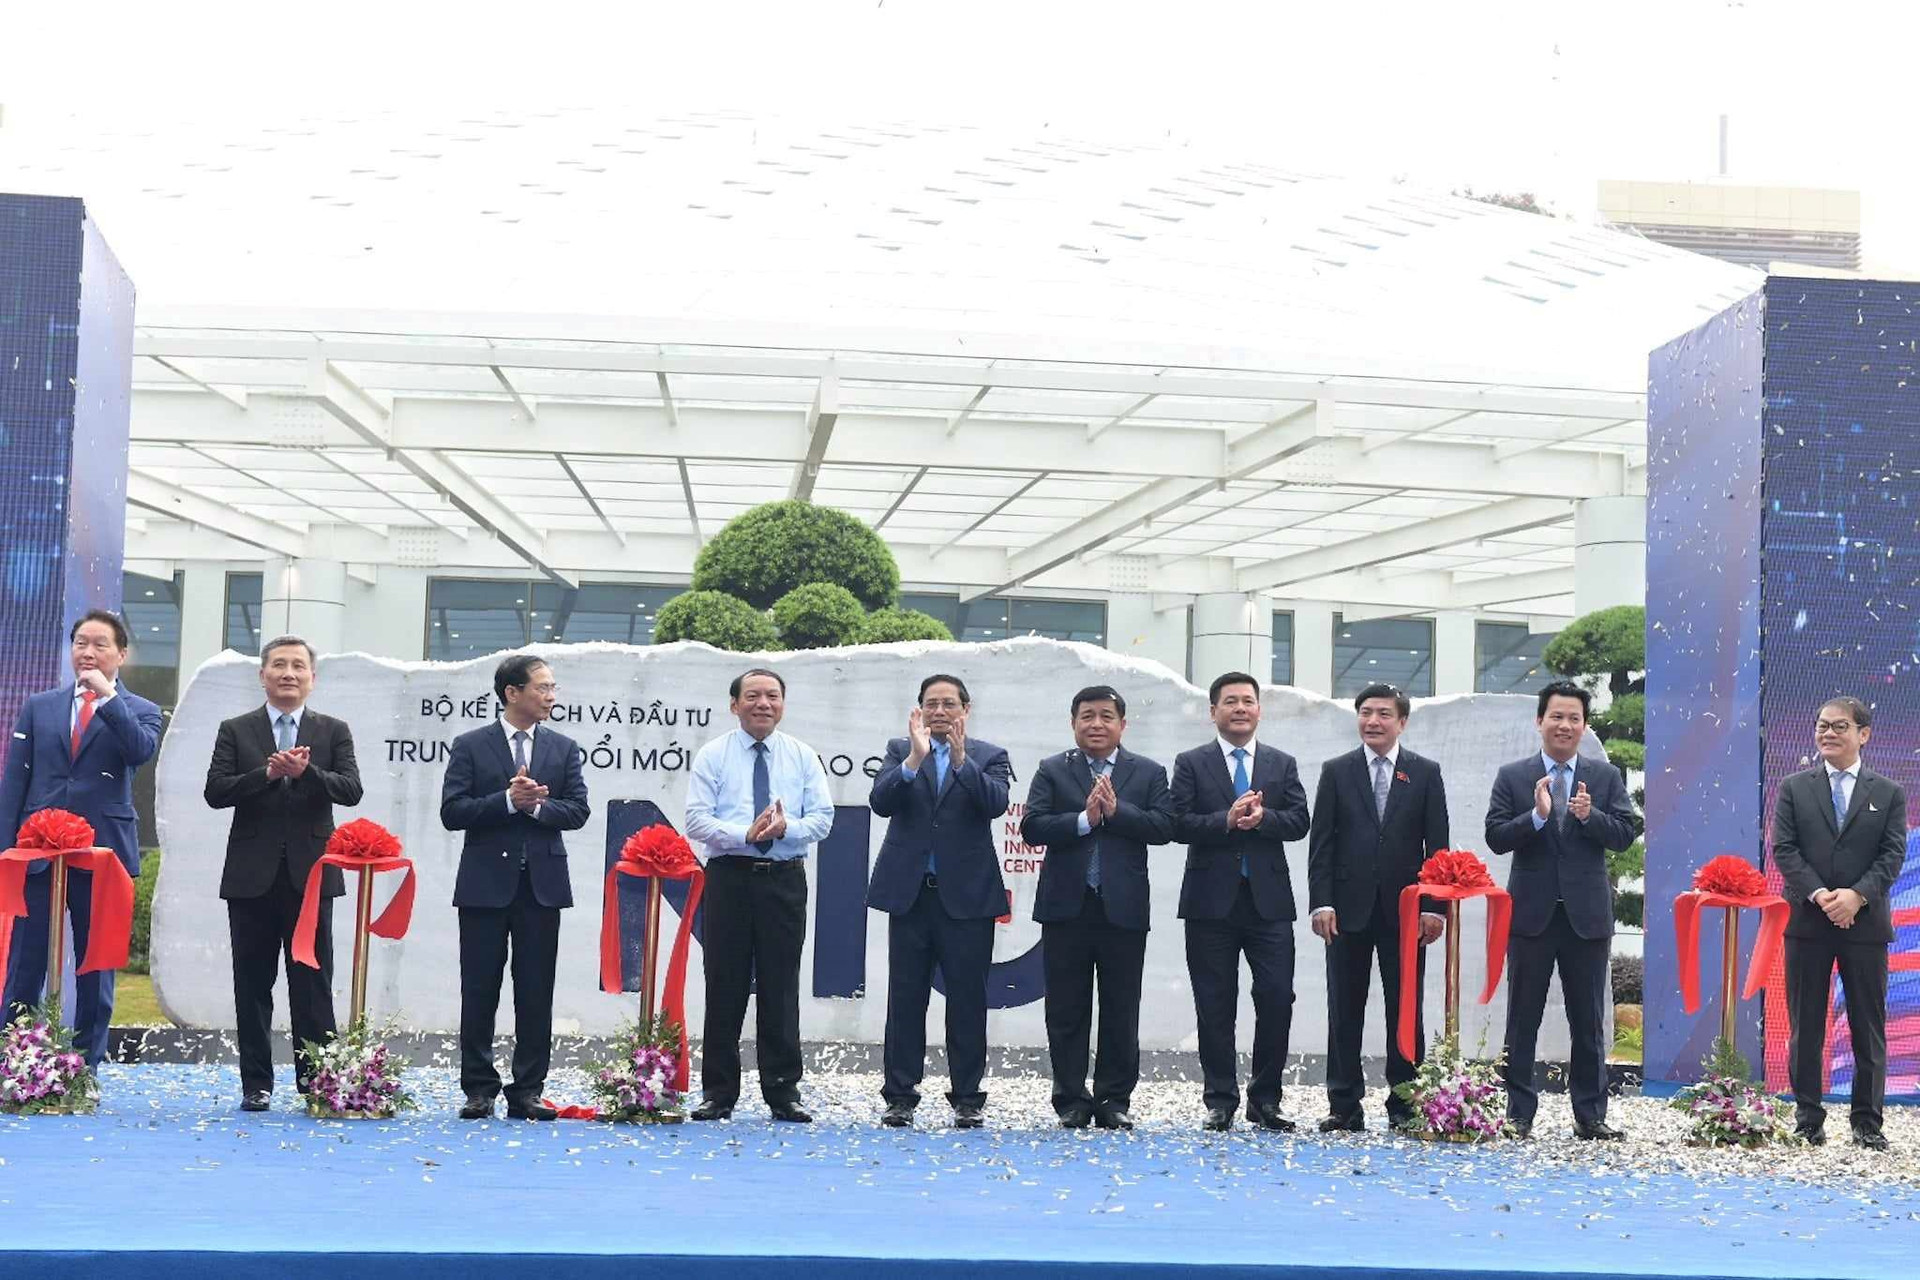 Chính thức khánh thành Trung tâm Đổi mới sáng tạo Quốc gia tại Hòa Lạc, ký kết với loạt ông lớn SpaceX, Samsung, FPT - Ảnh 1.